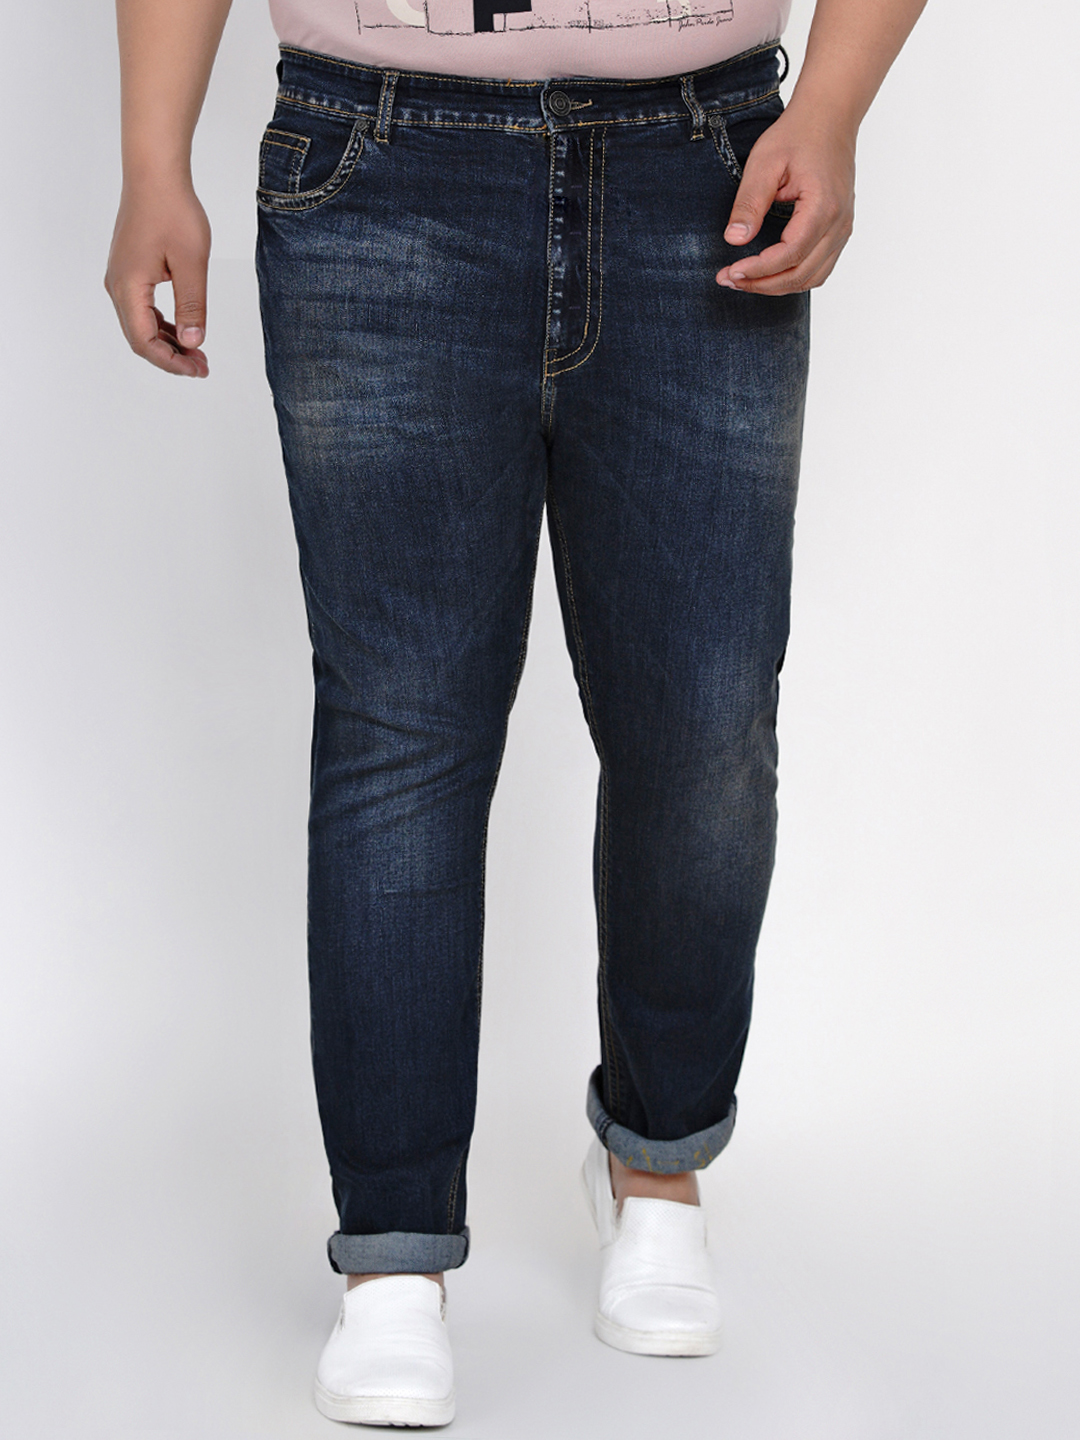 bottomwear/jeans/JPJ12123/jpj12123-1.jpg